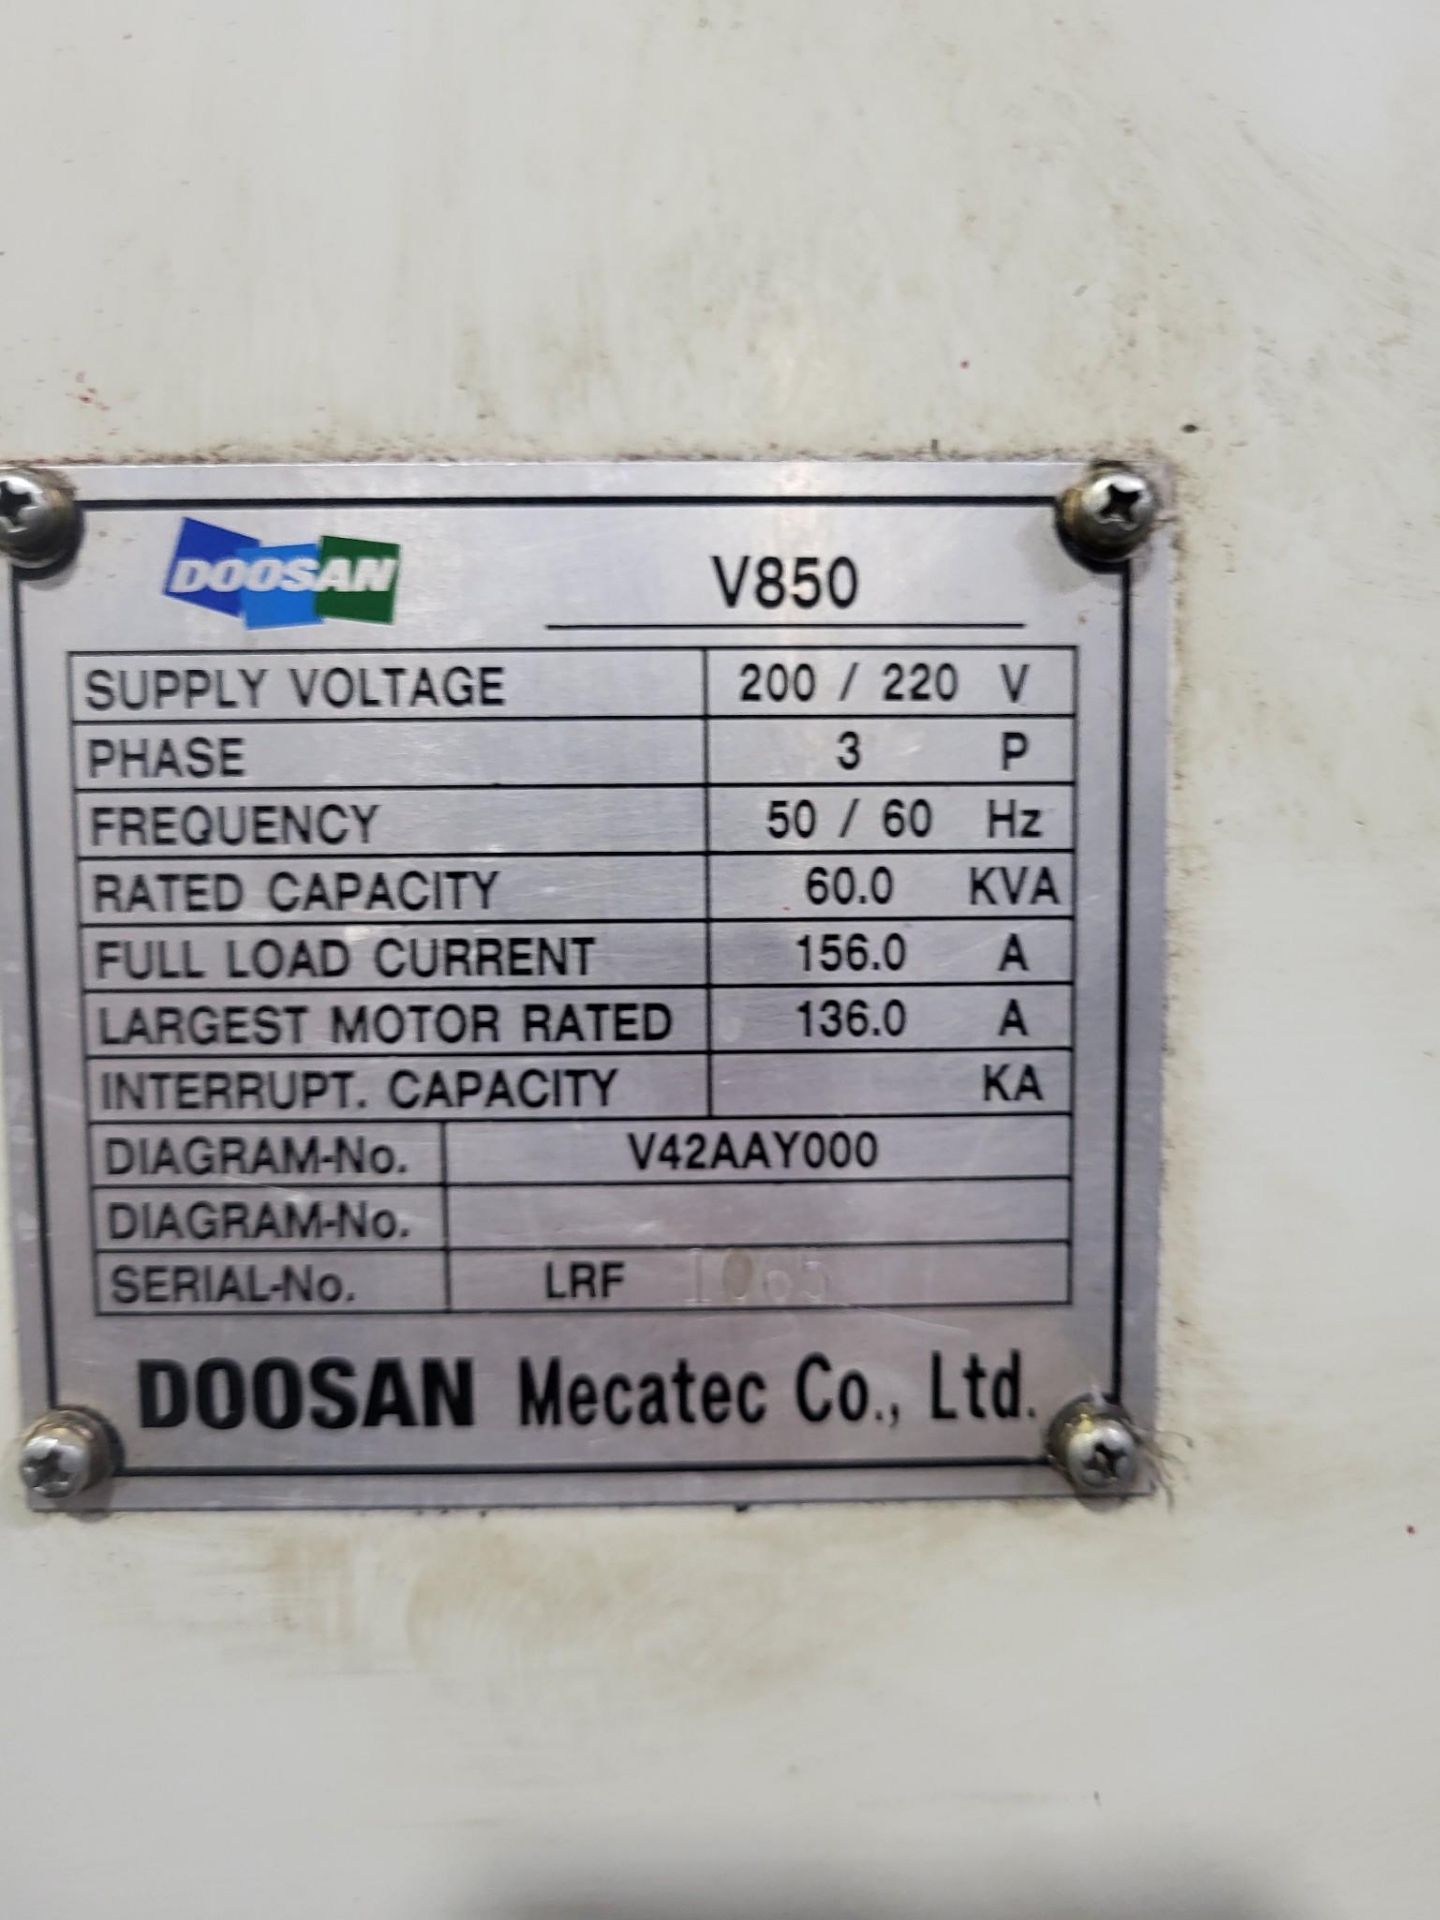 2004 DOOSAN V850 CNC VTL WITH 24" CHUCK - Image 9 of 28